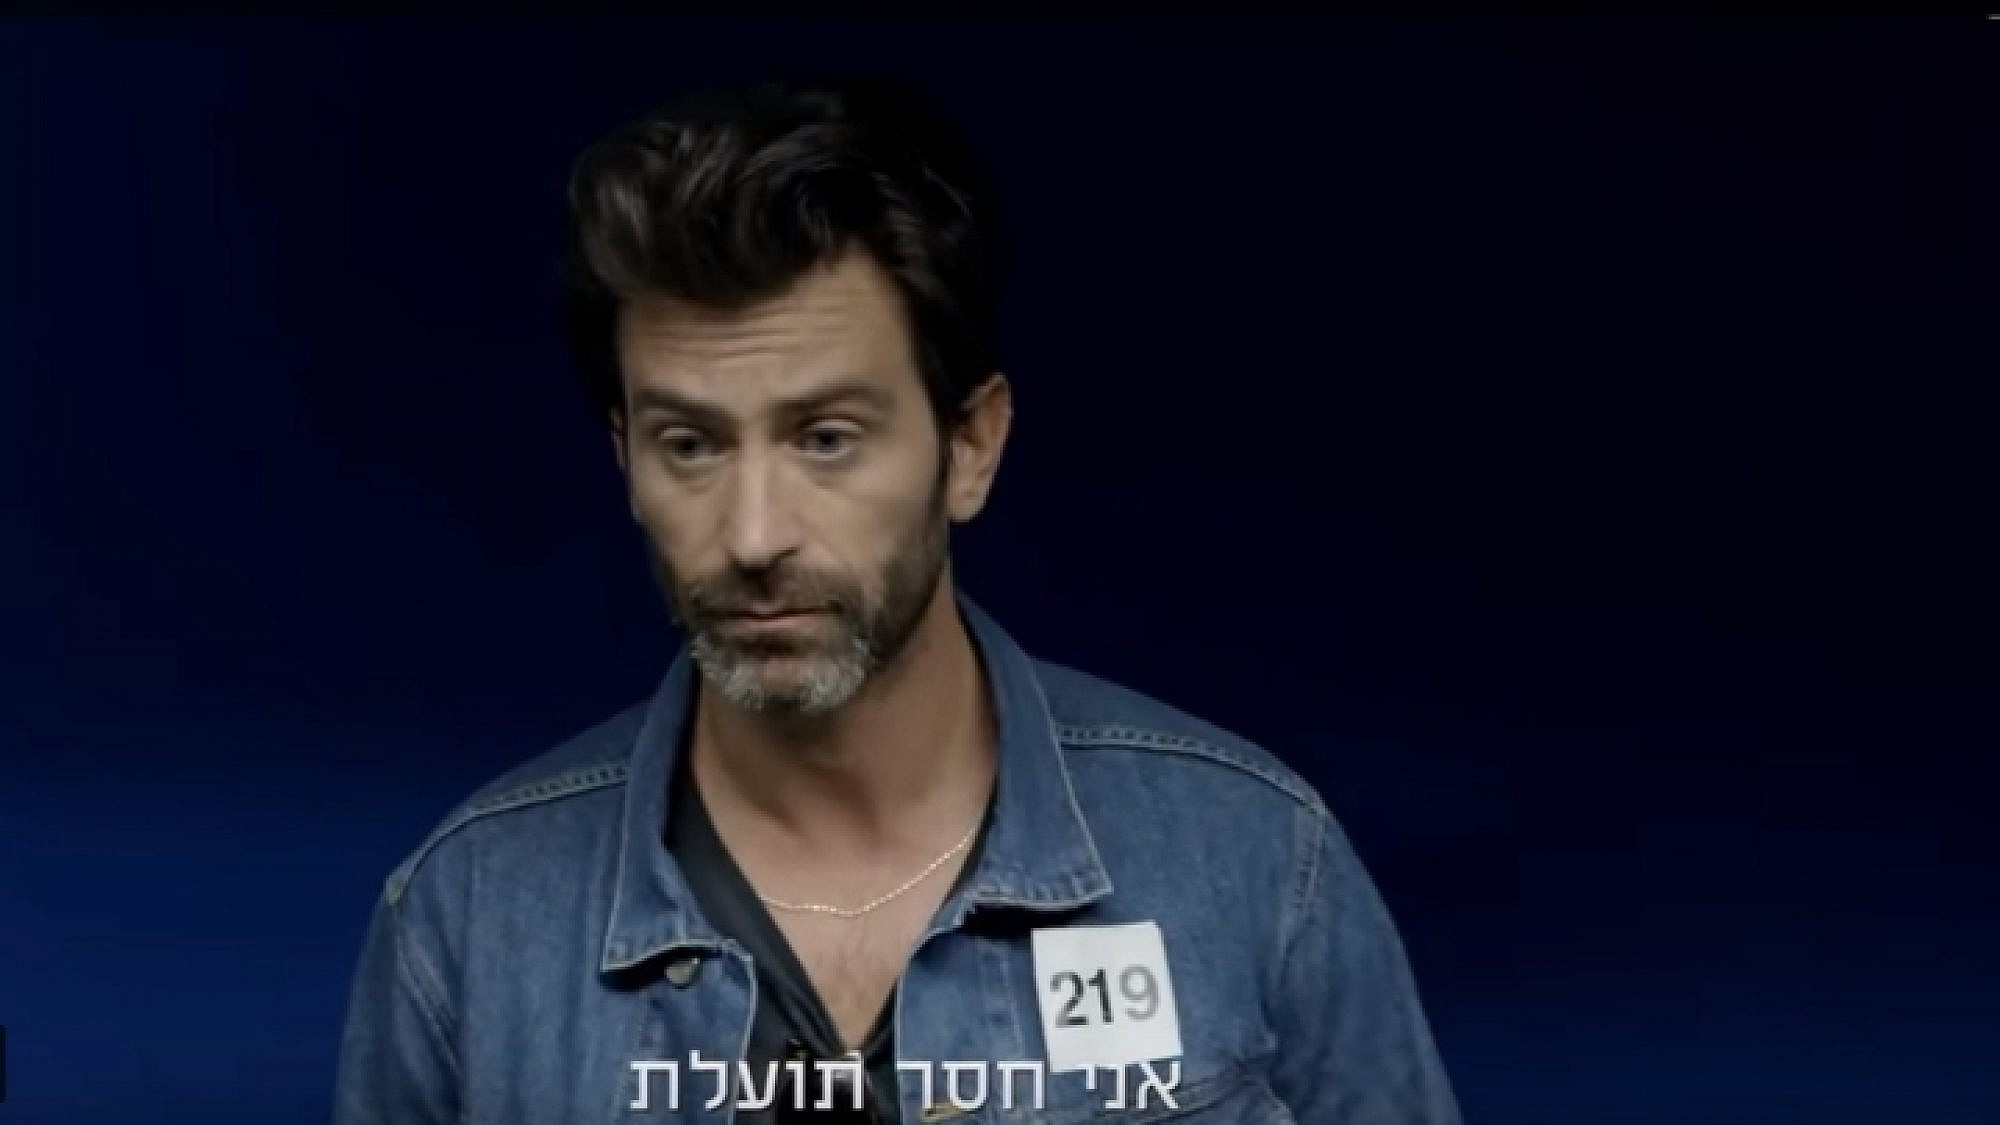 יהודה לוי | צילום מסך מהסדרה "איש חשוב מאוד"